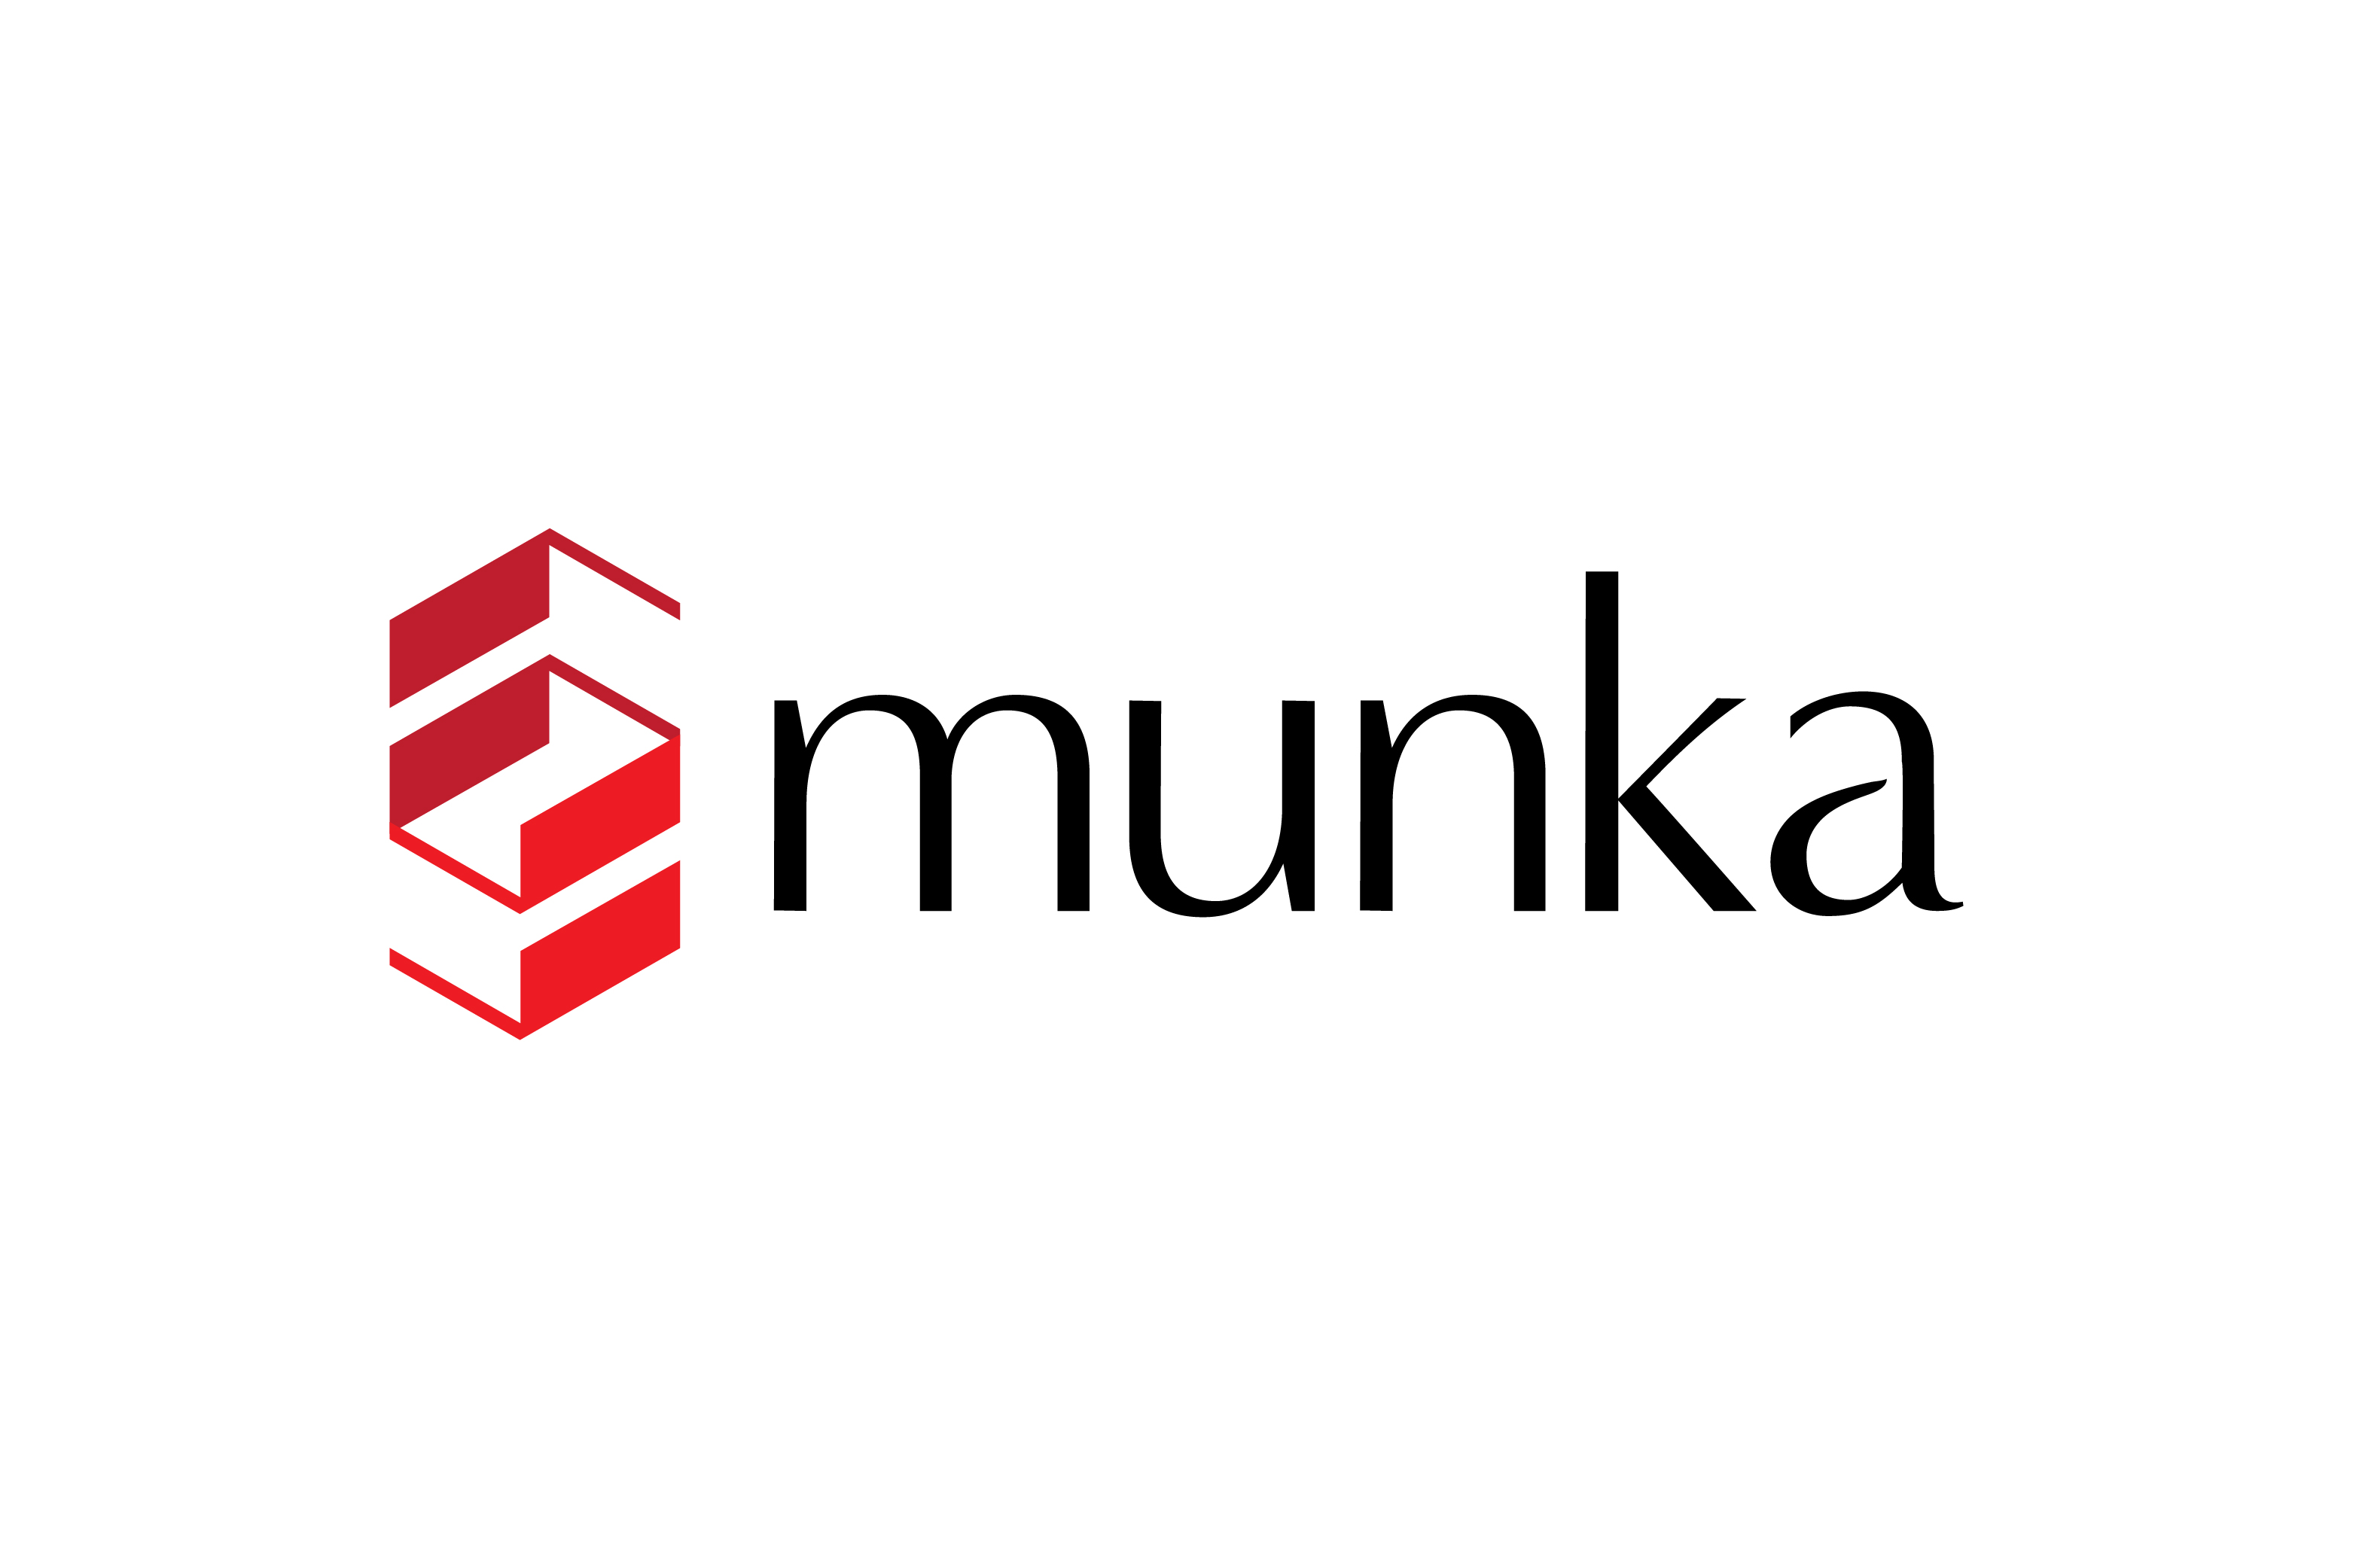 Munka company logo on munka